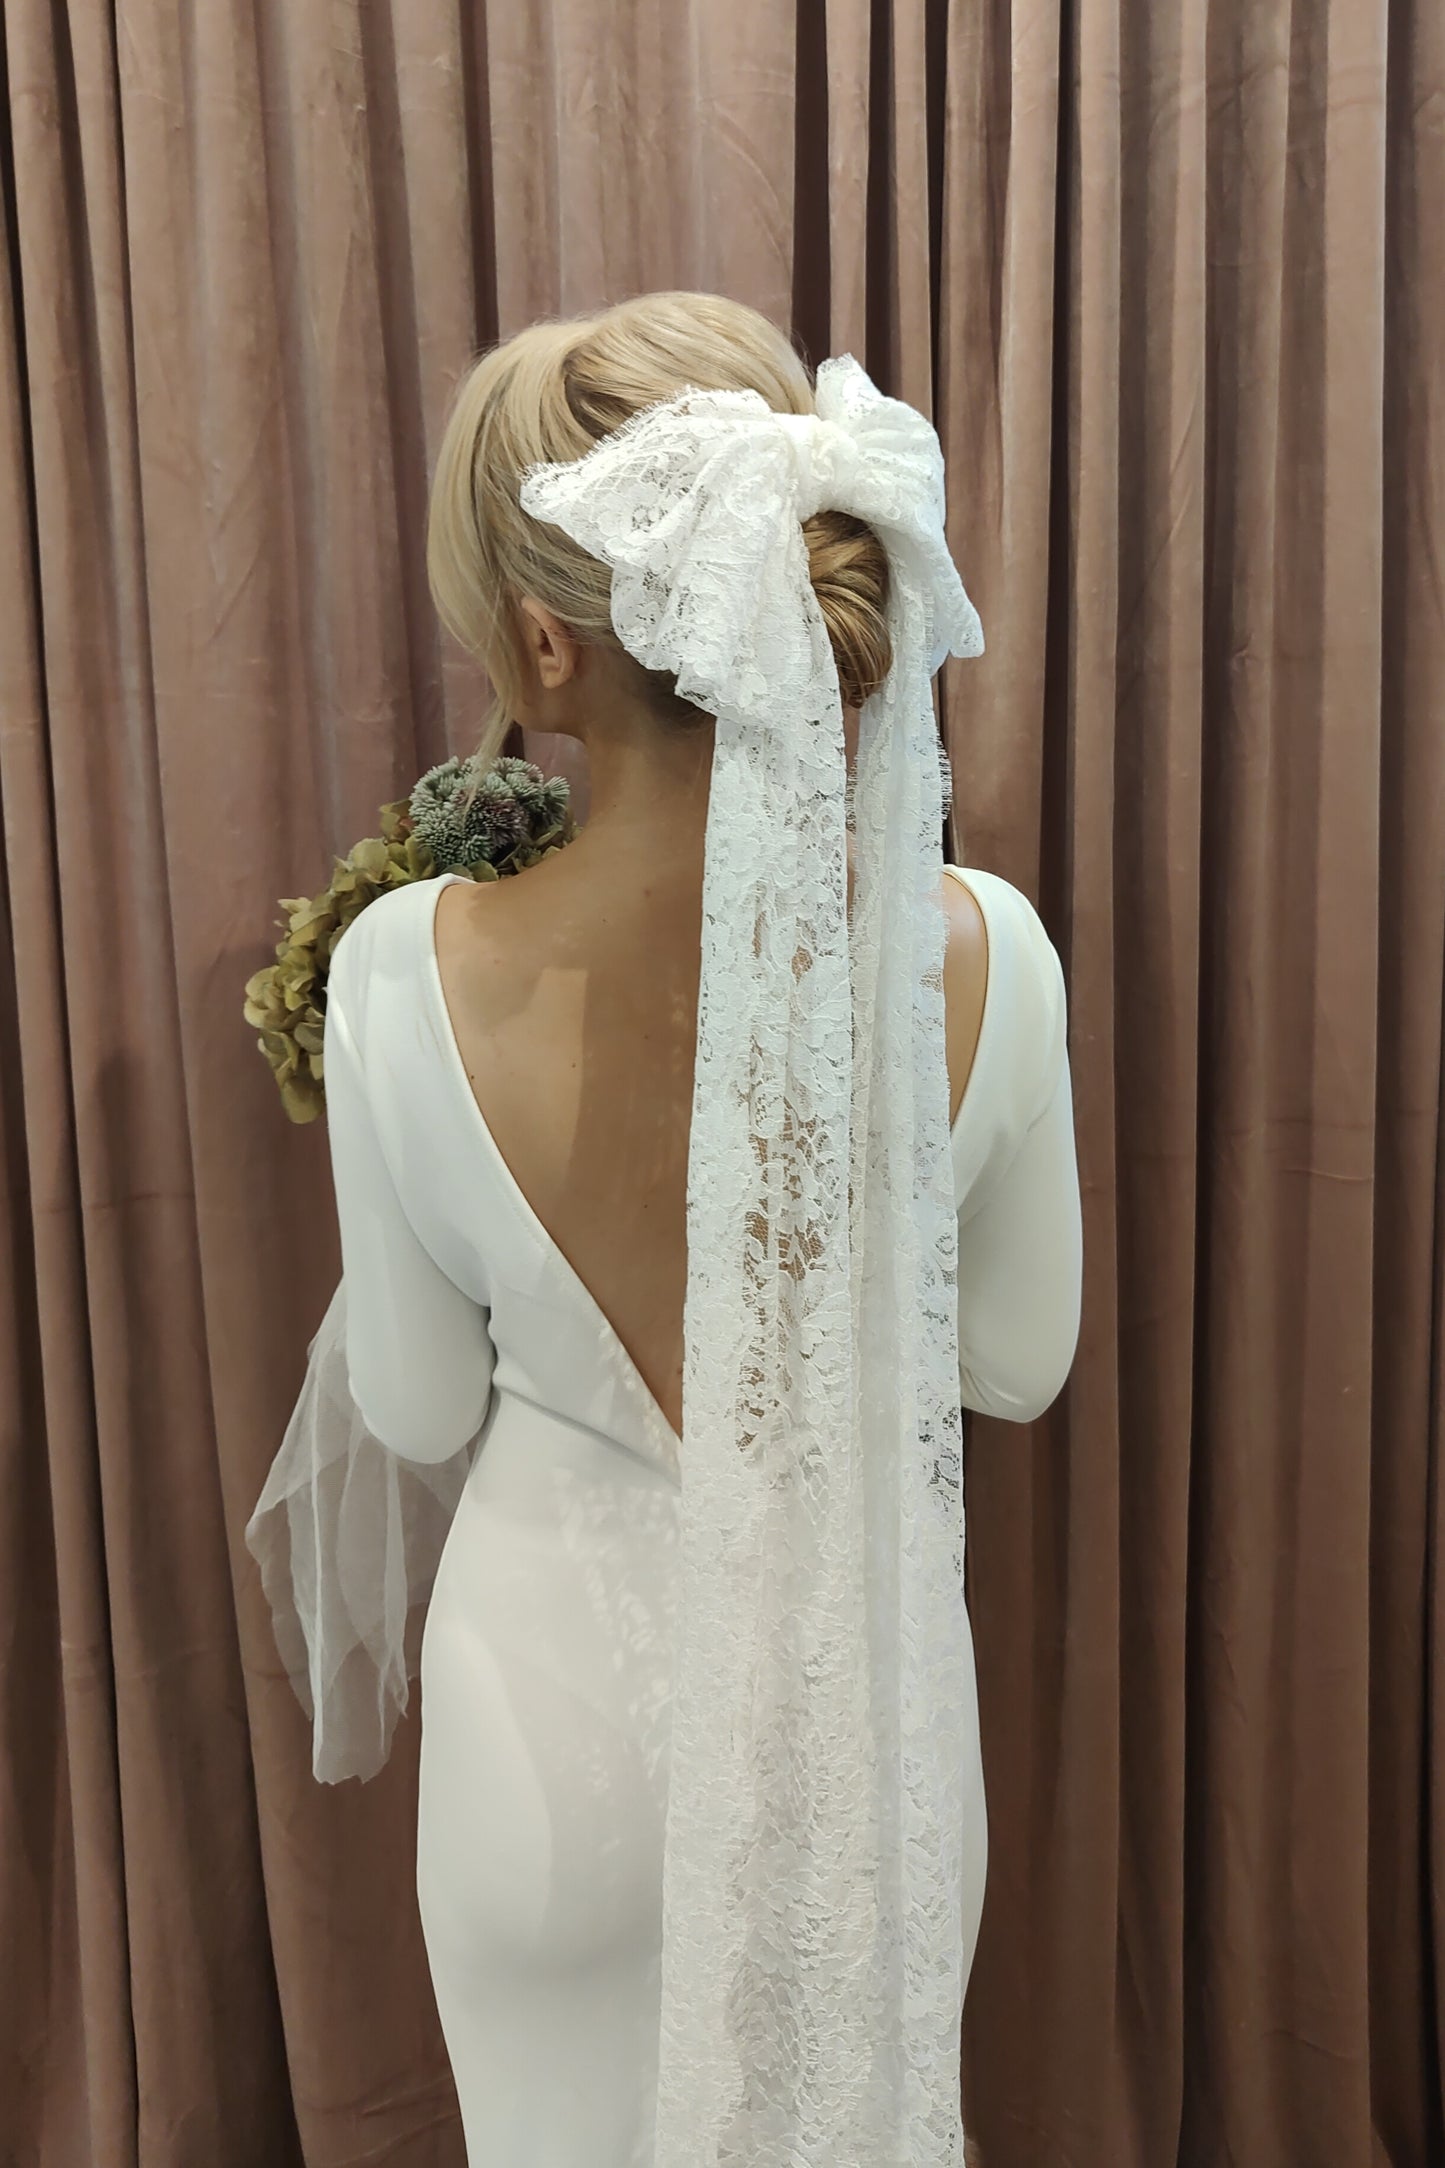 VICTORIA BOW - Vintage Lace Bridal Bow Veil